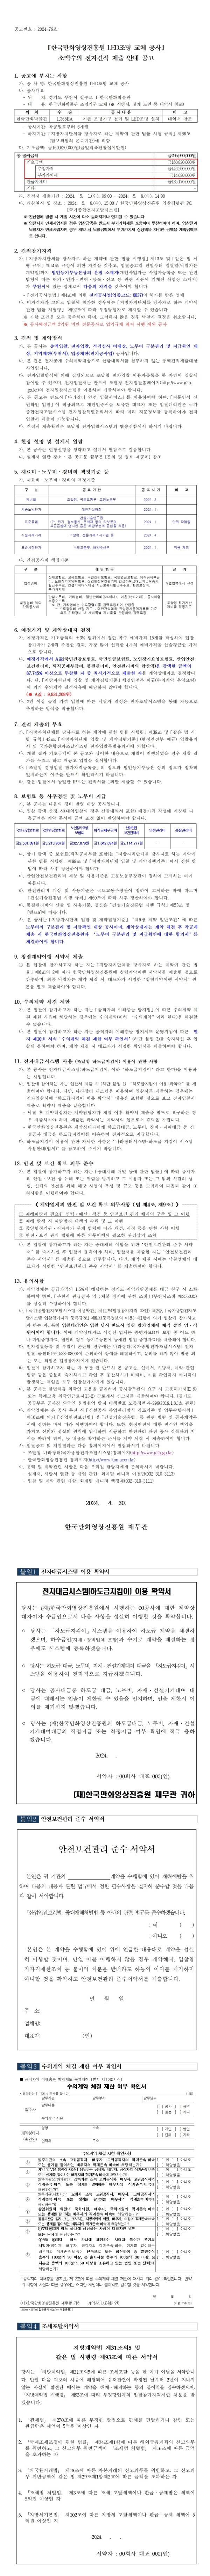 『한국만화영상진흥원 LED조명 교체 공사』 소액수의 전자견적 제출 안내 공고